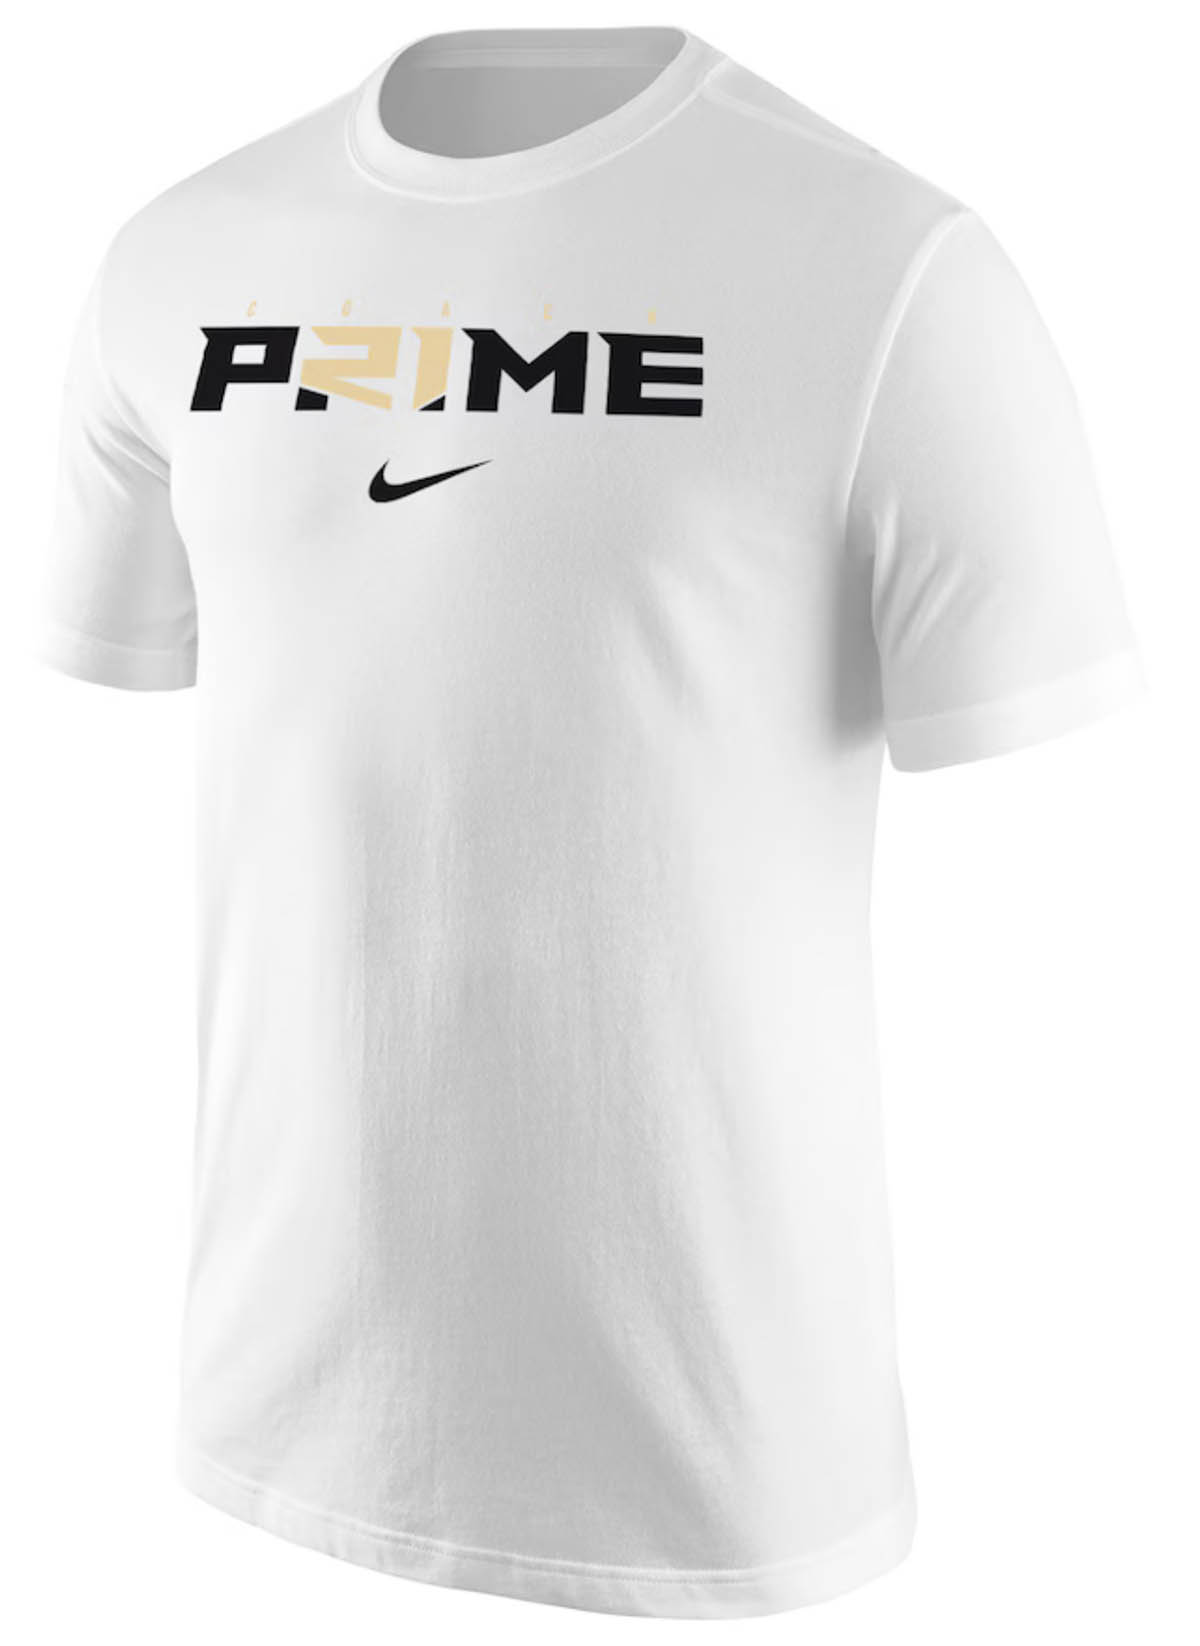 Nike-Deion-Sanders-Prime-T-Shirt-White-Gold